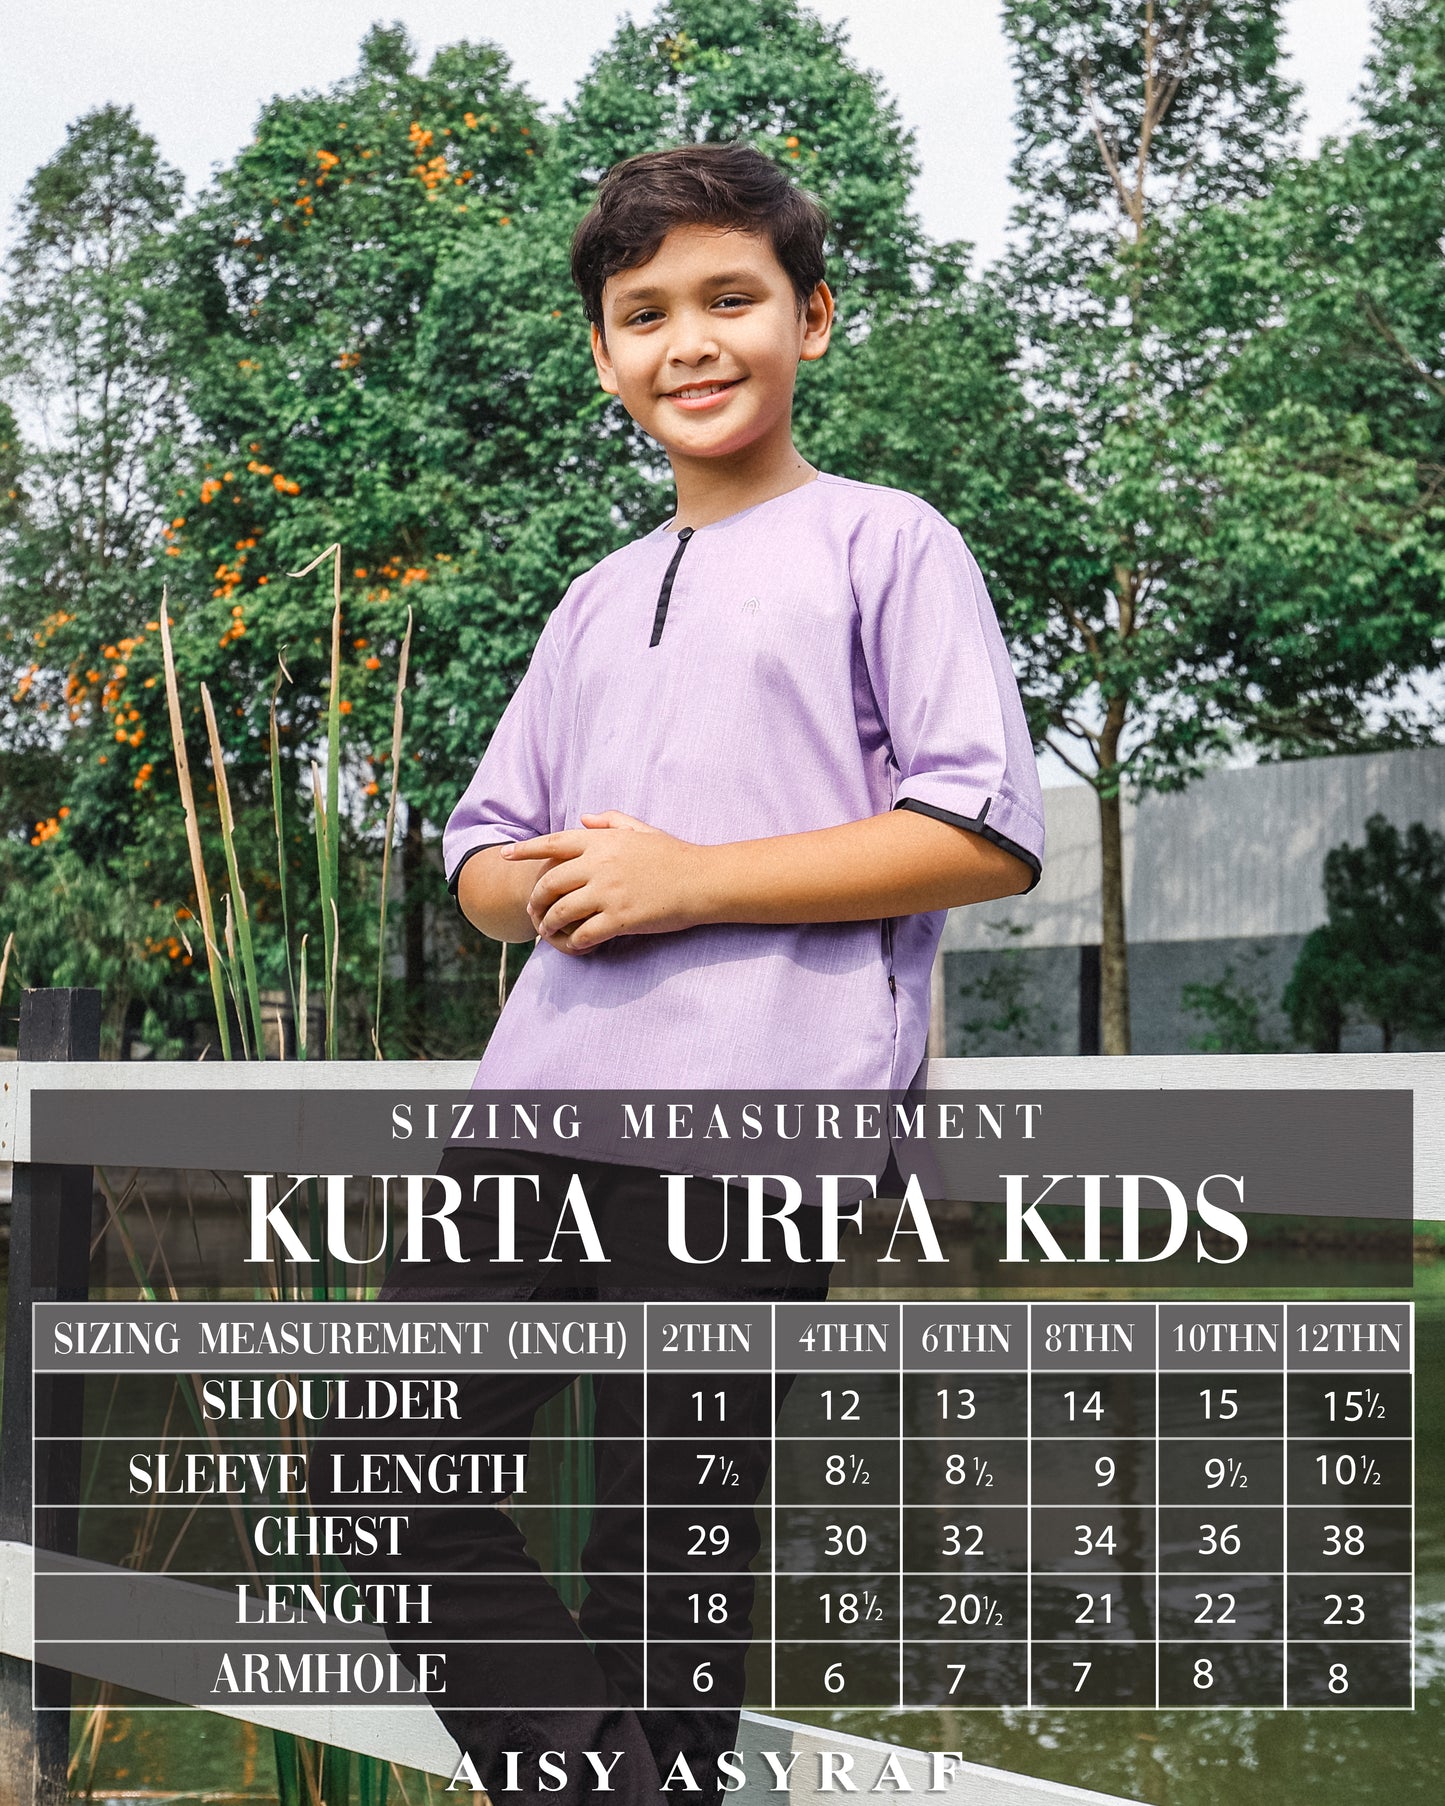 Kurta Urfa Kids - Sage